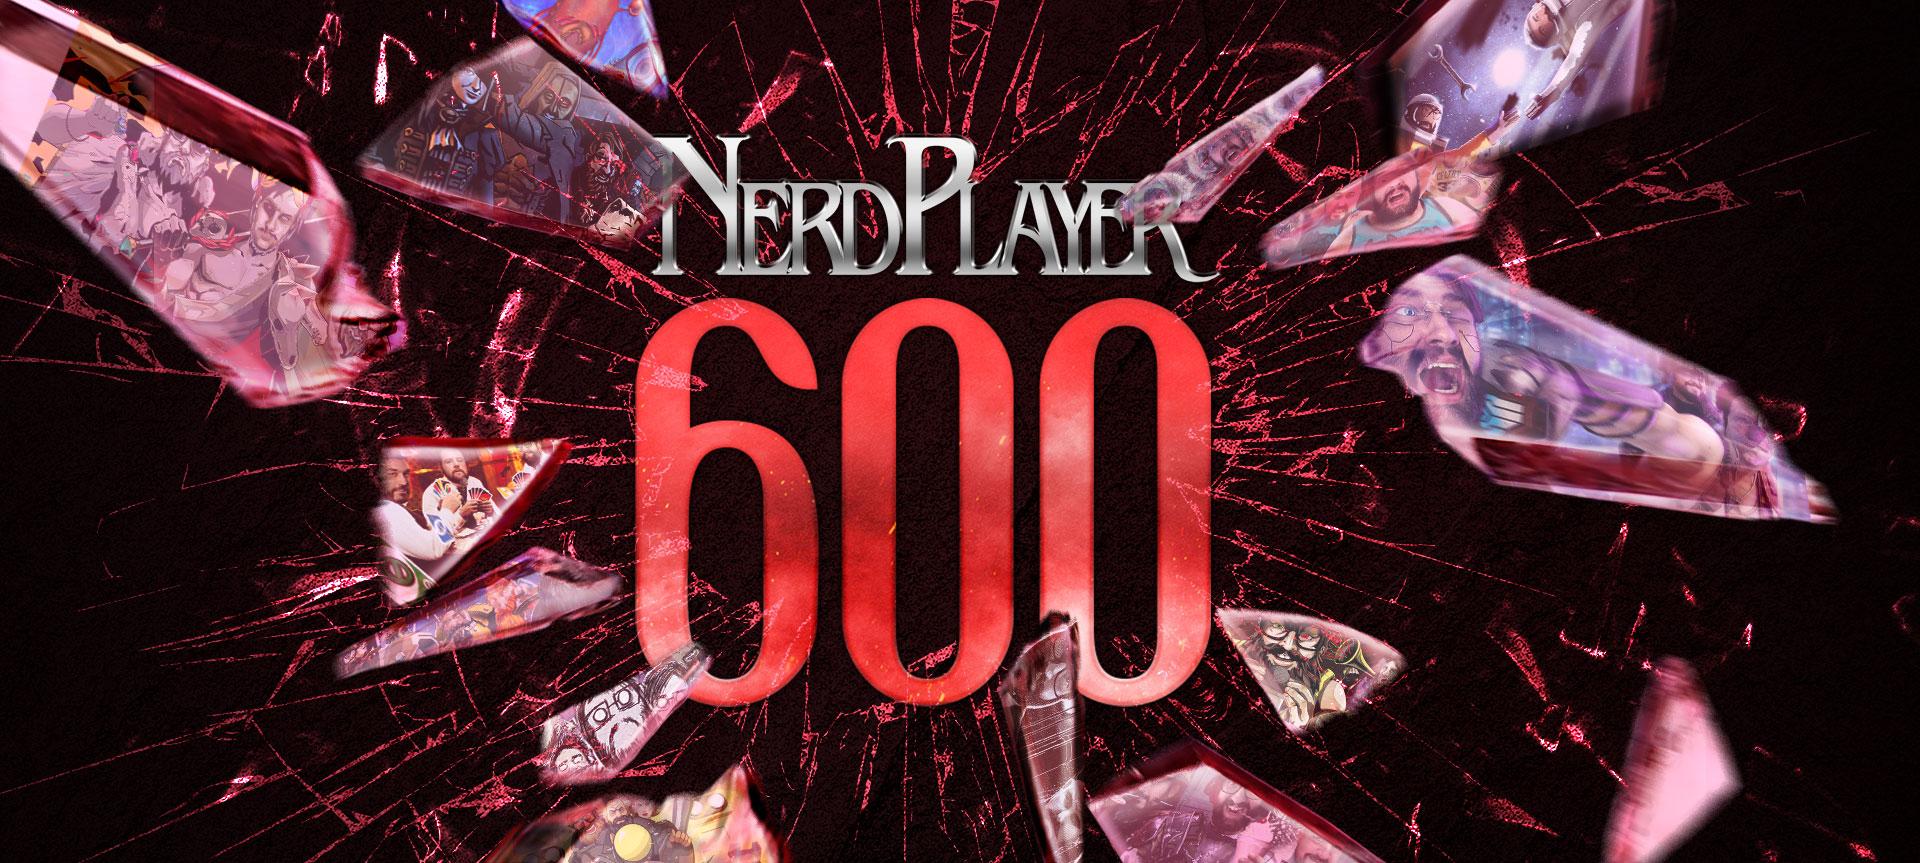 O melhor de 600 NerdPlayers